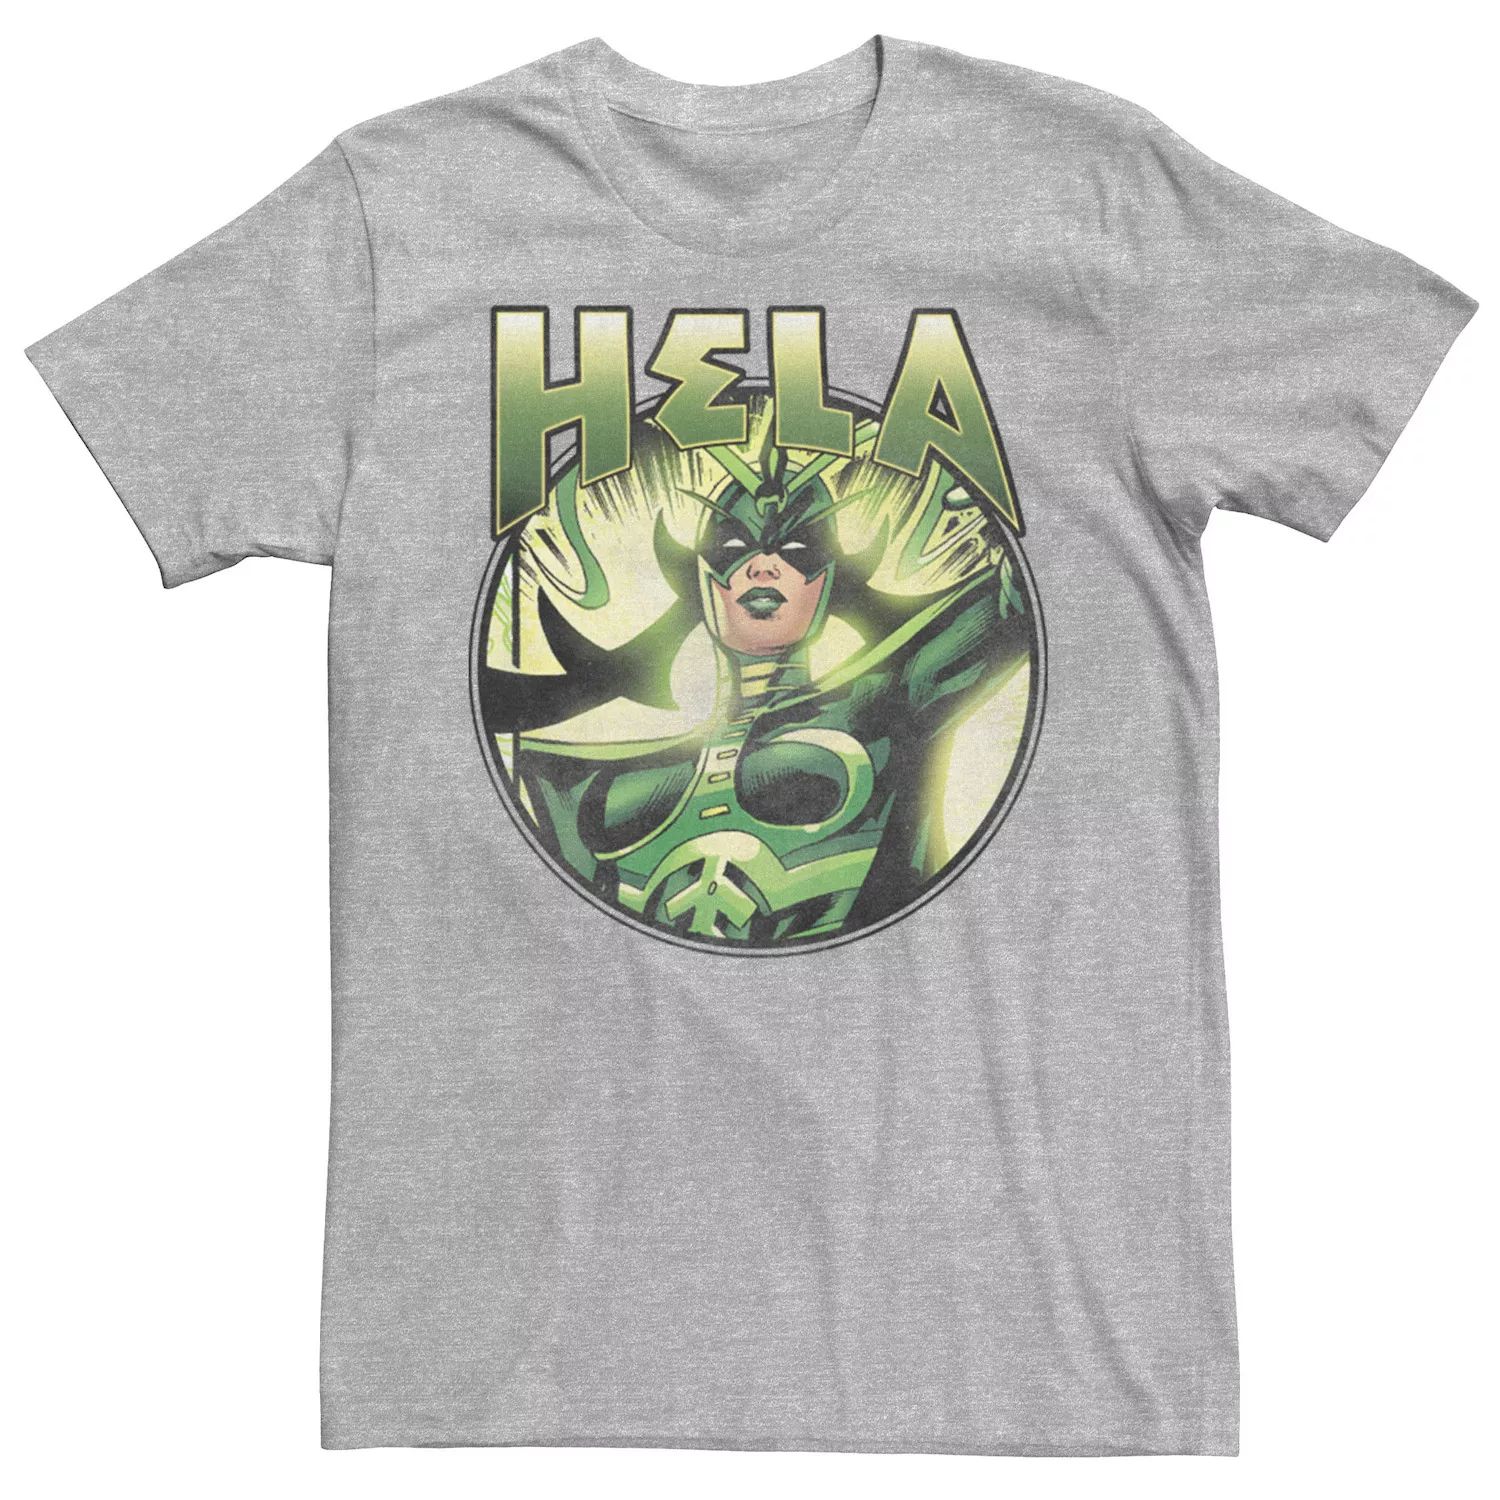 Мужская зеленая круглая футболка Marvel Hela Goddess of Death Licensed Character